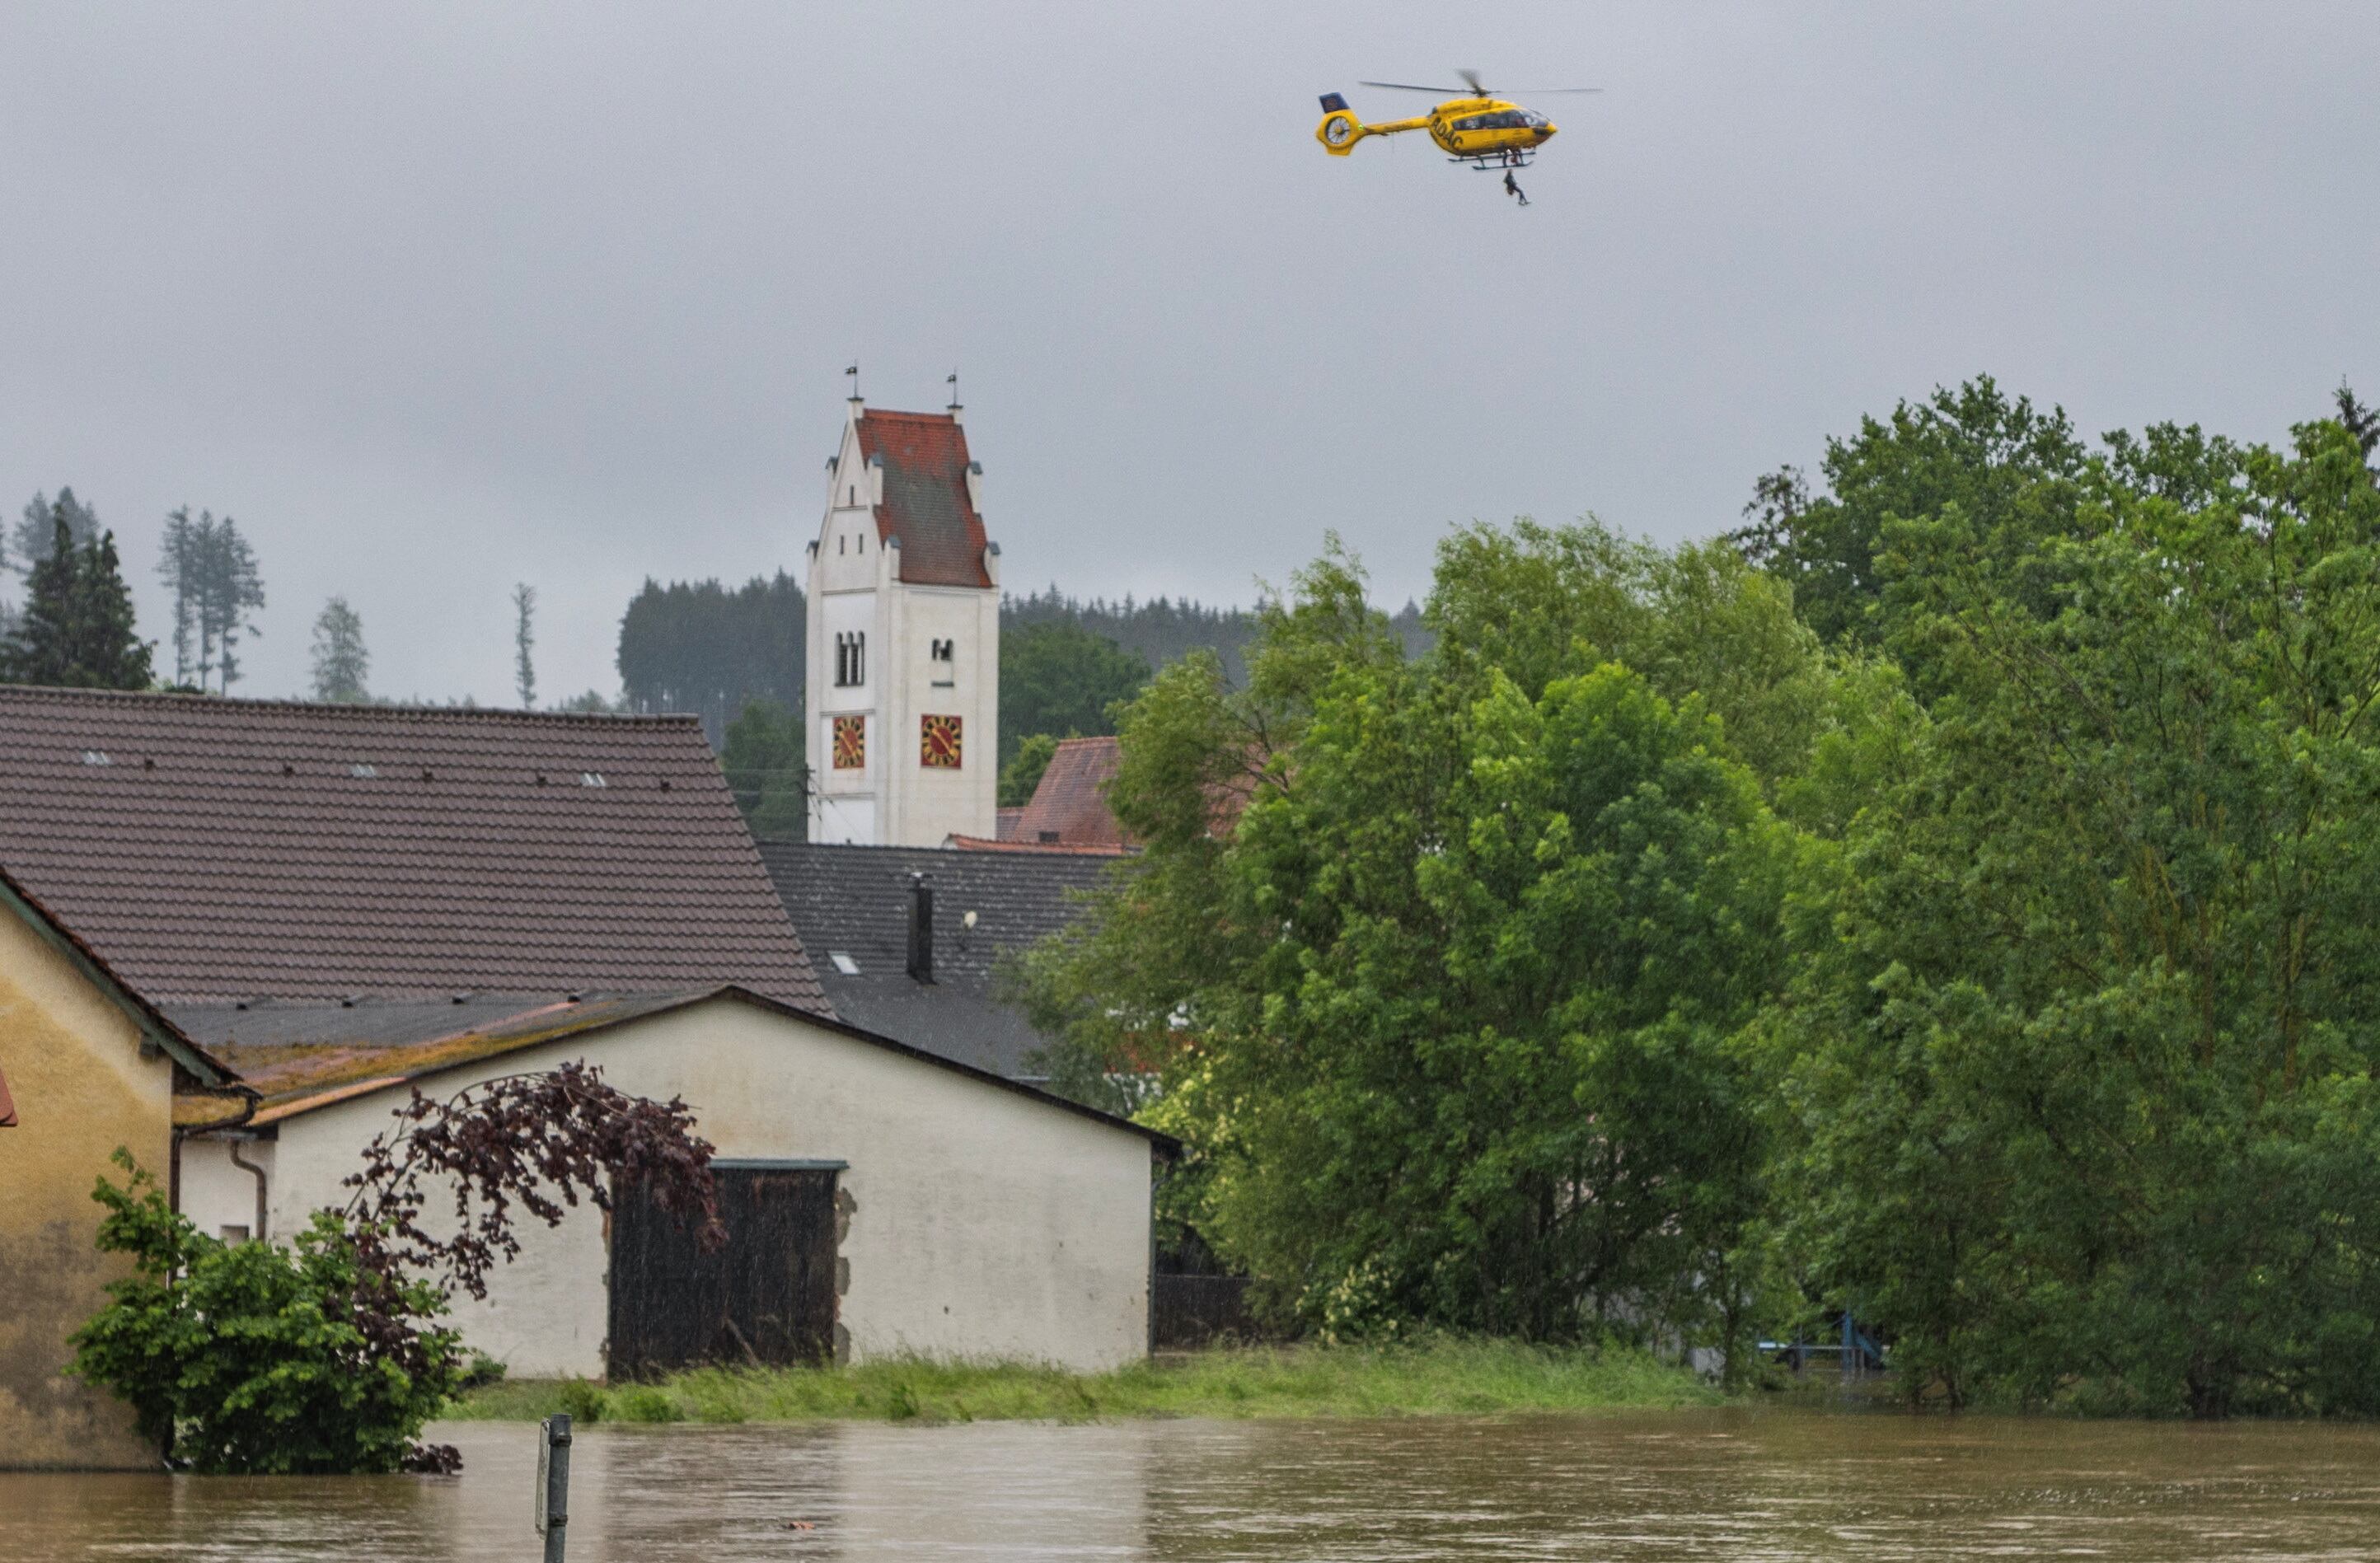 Servicios de emergencia trabajando en Fiscnach, al sur de la ciudad de Augsburgo, Alemania.